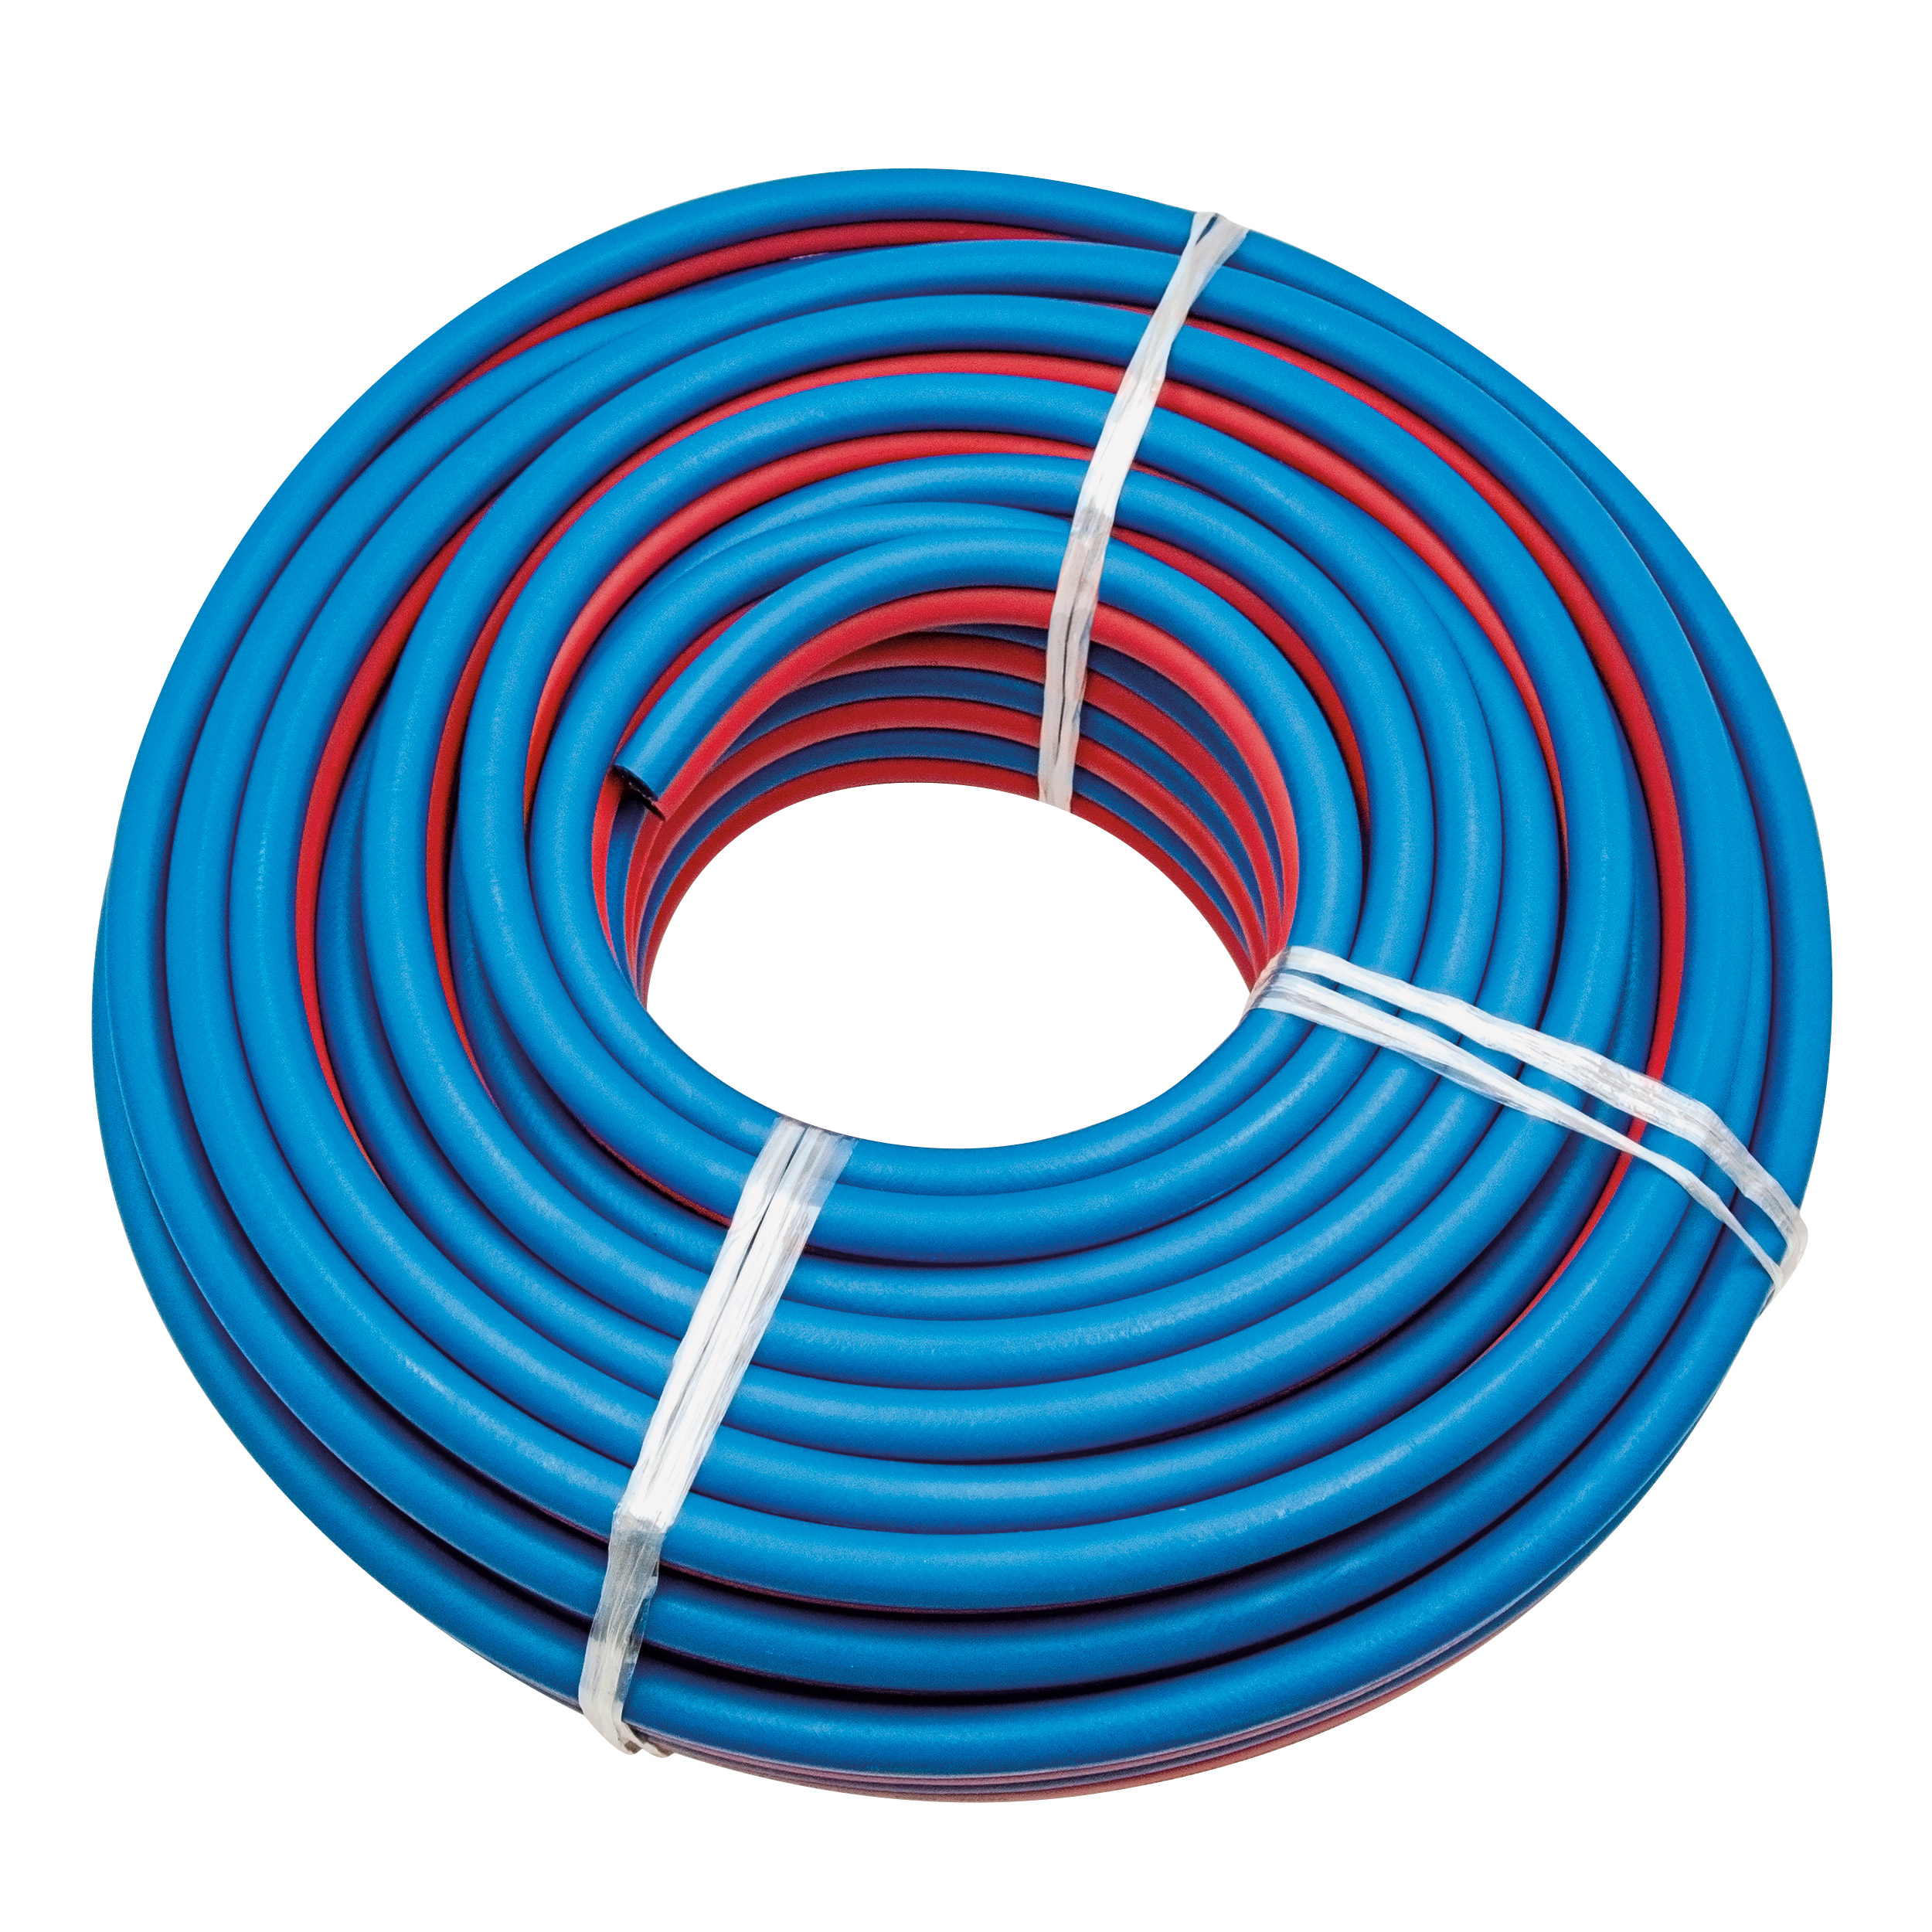 Oxyfuel twin hose red-blue NW 6x3,5 EN 559 roll 40 m